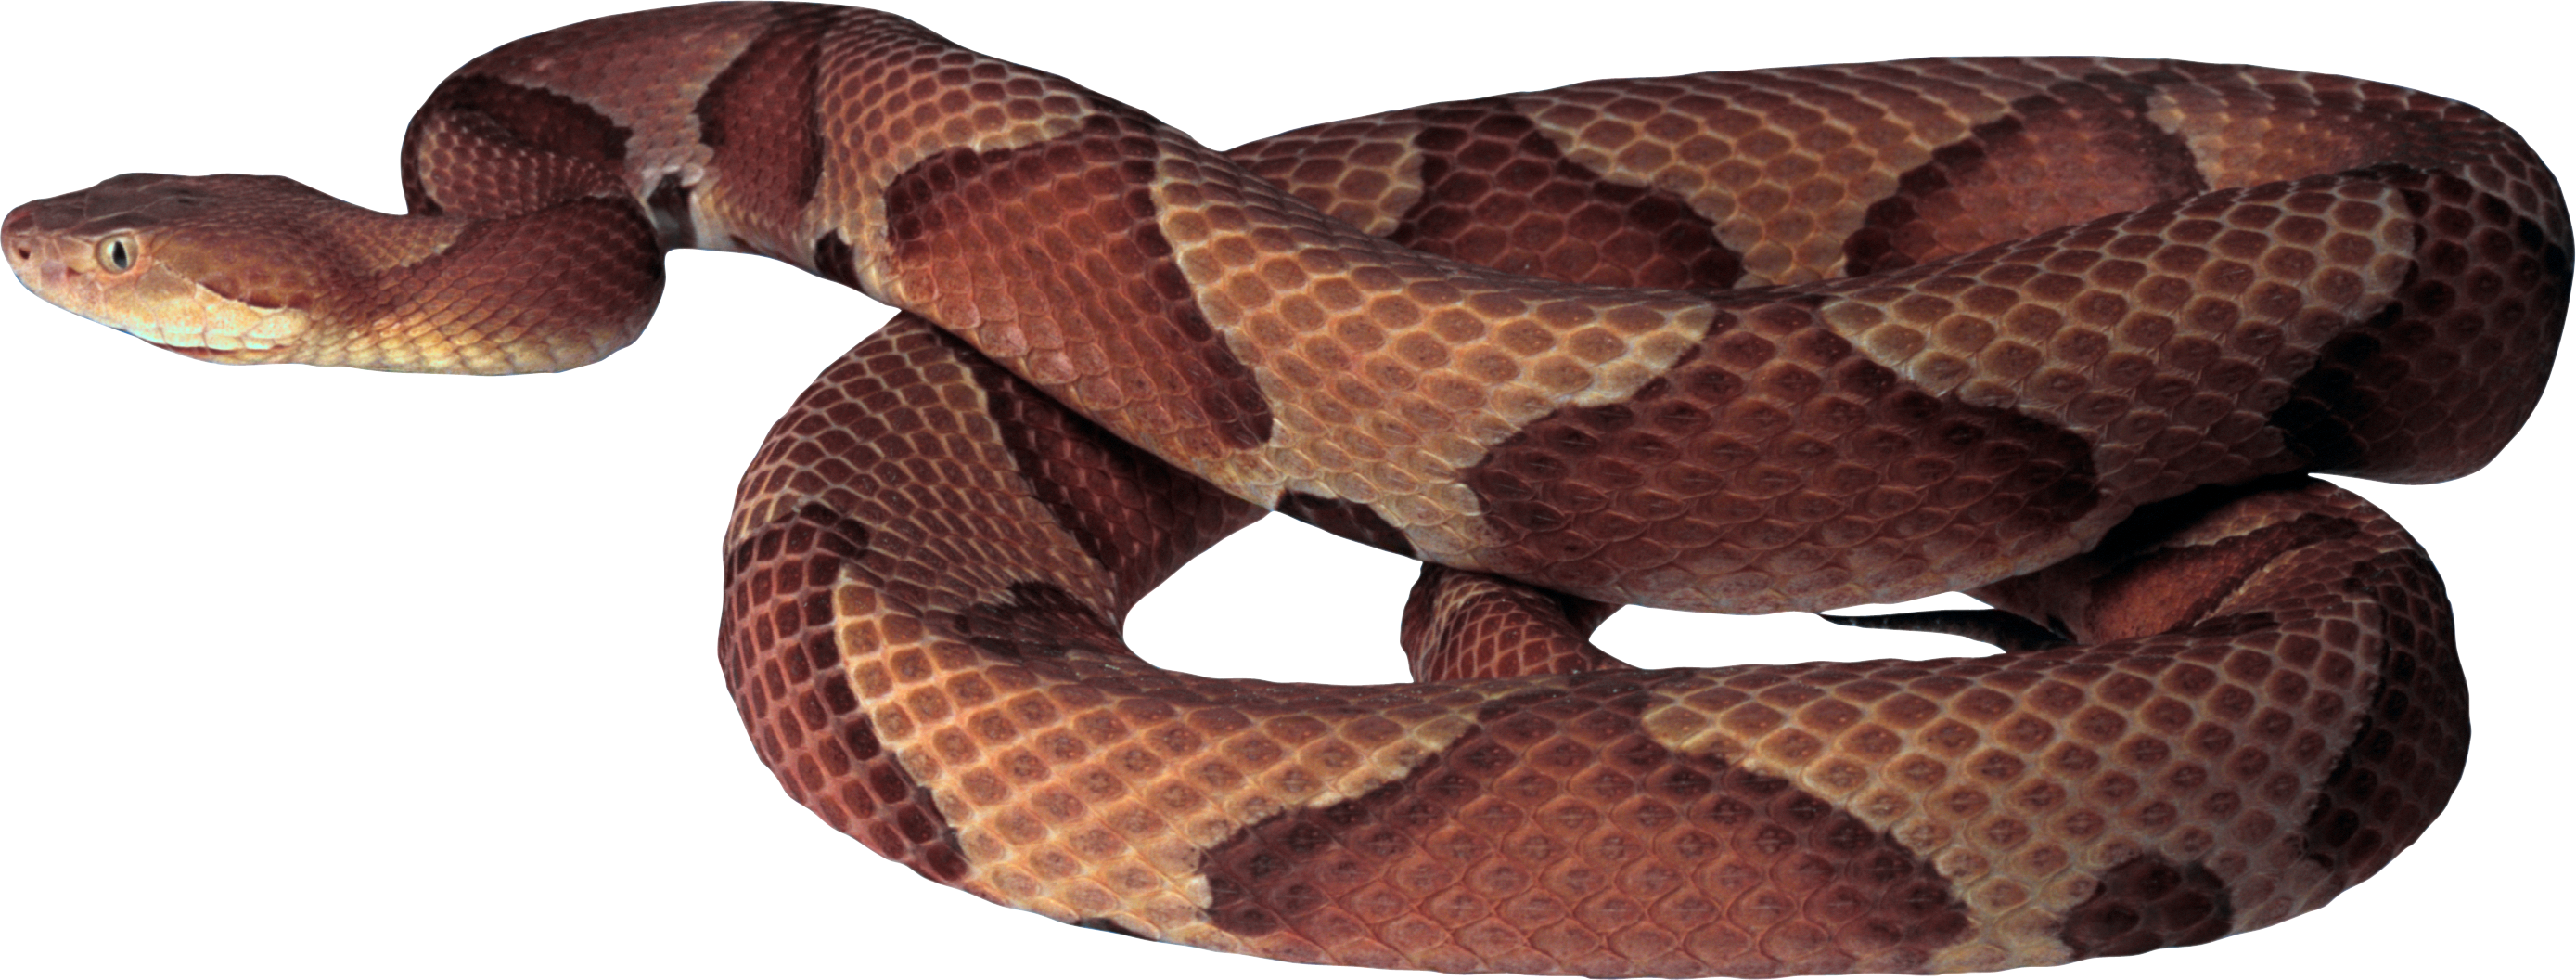 Snake brown snake